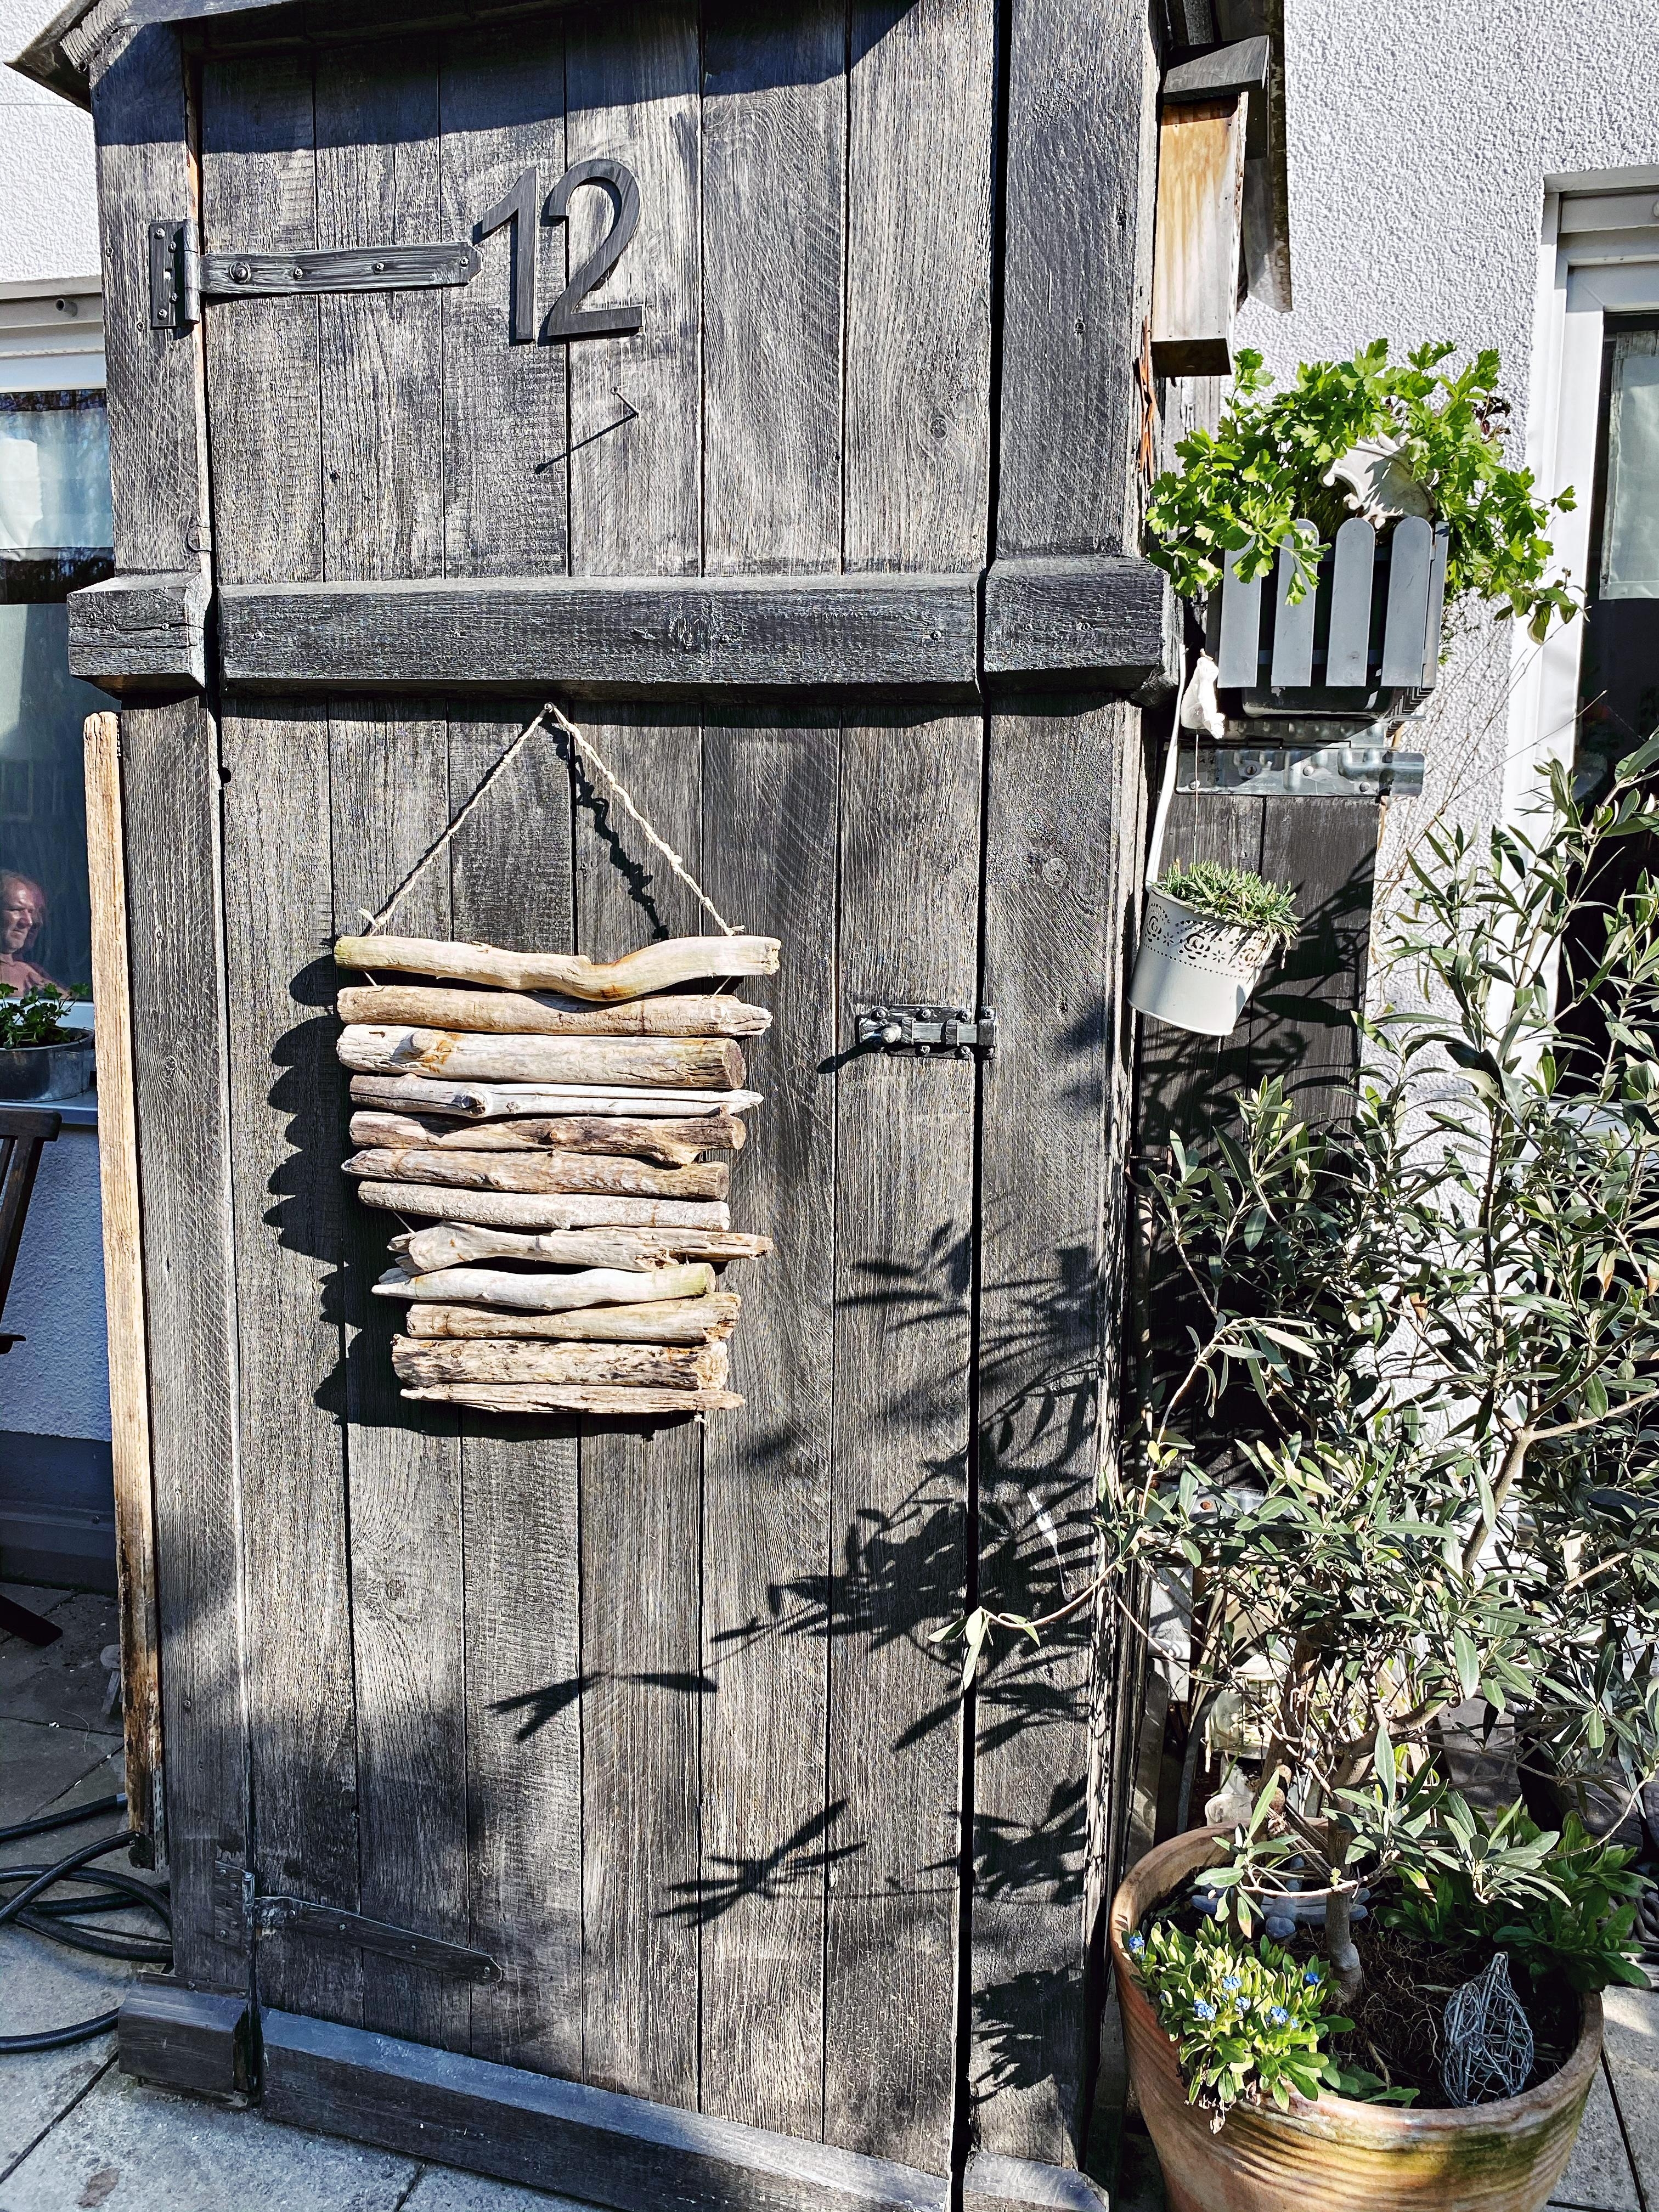 Treibholz DIY! Stillt das Fernweh ein bisschen in dieser Zeit.☀️#DIY 
#fernweh #wirbleibenzuhause #stayhome #Garten 